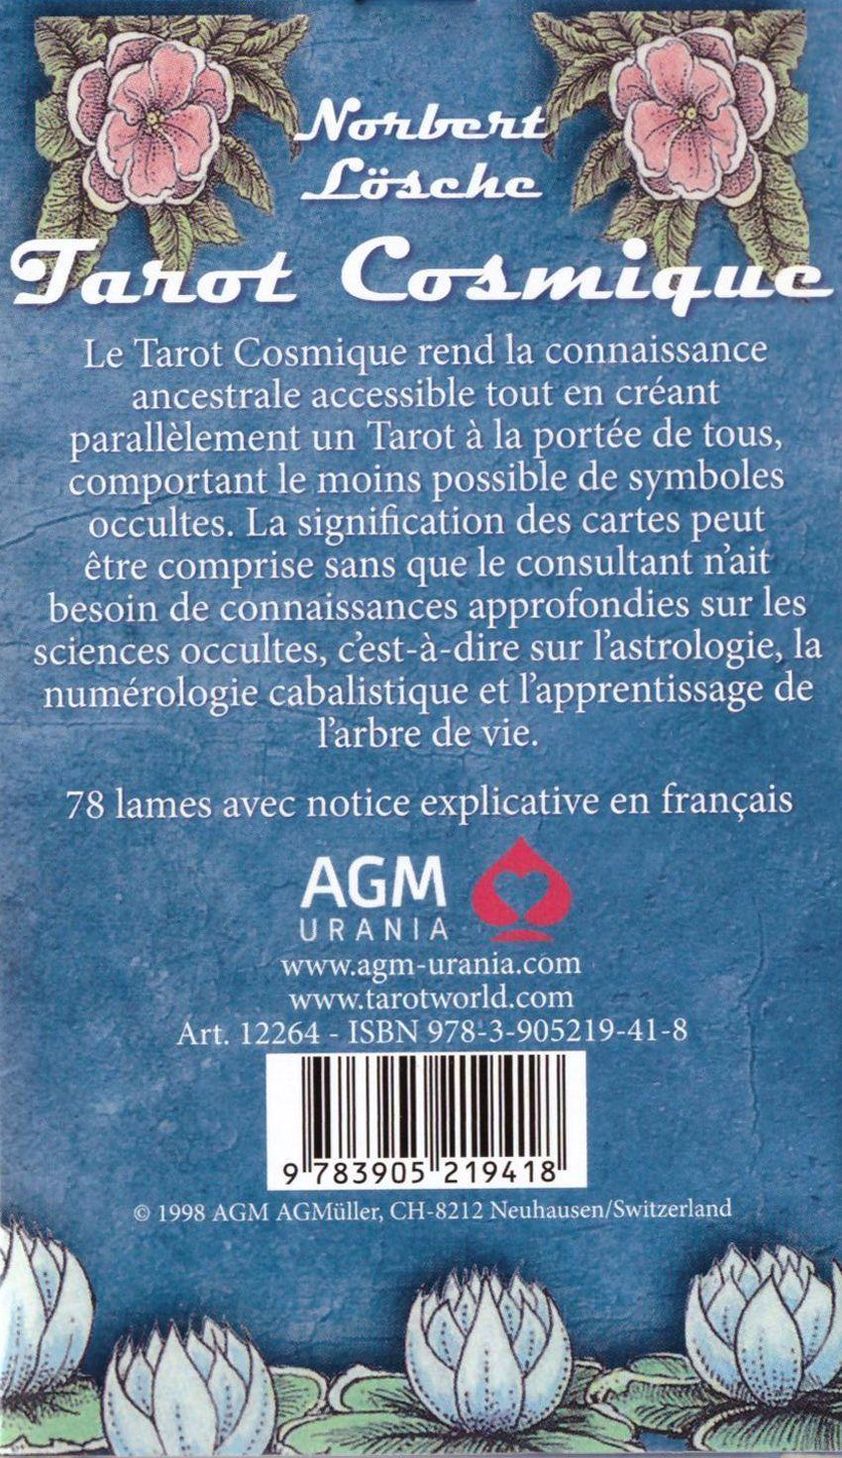 Cosmic Tarot - Tarot cosmique FR Buch versandkostenfrei bei Weltbild.ch